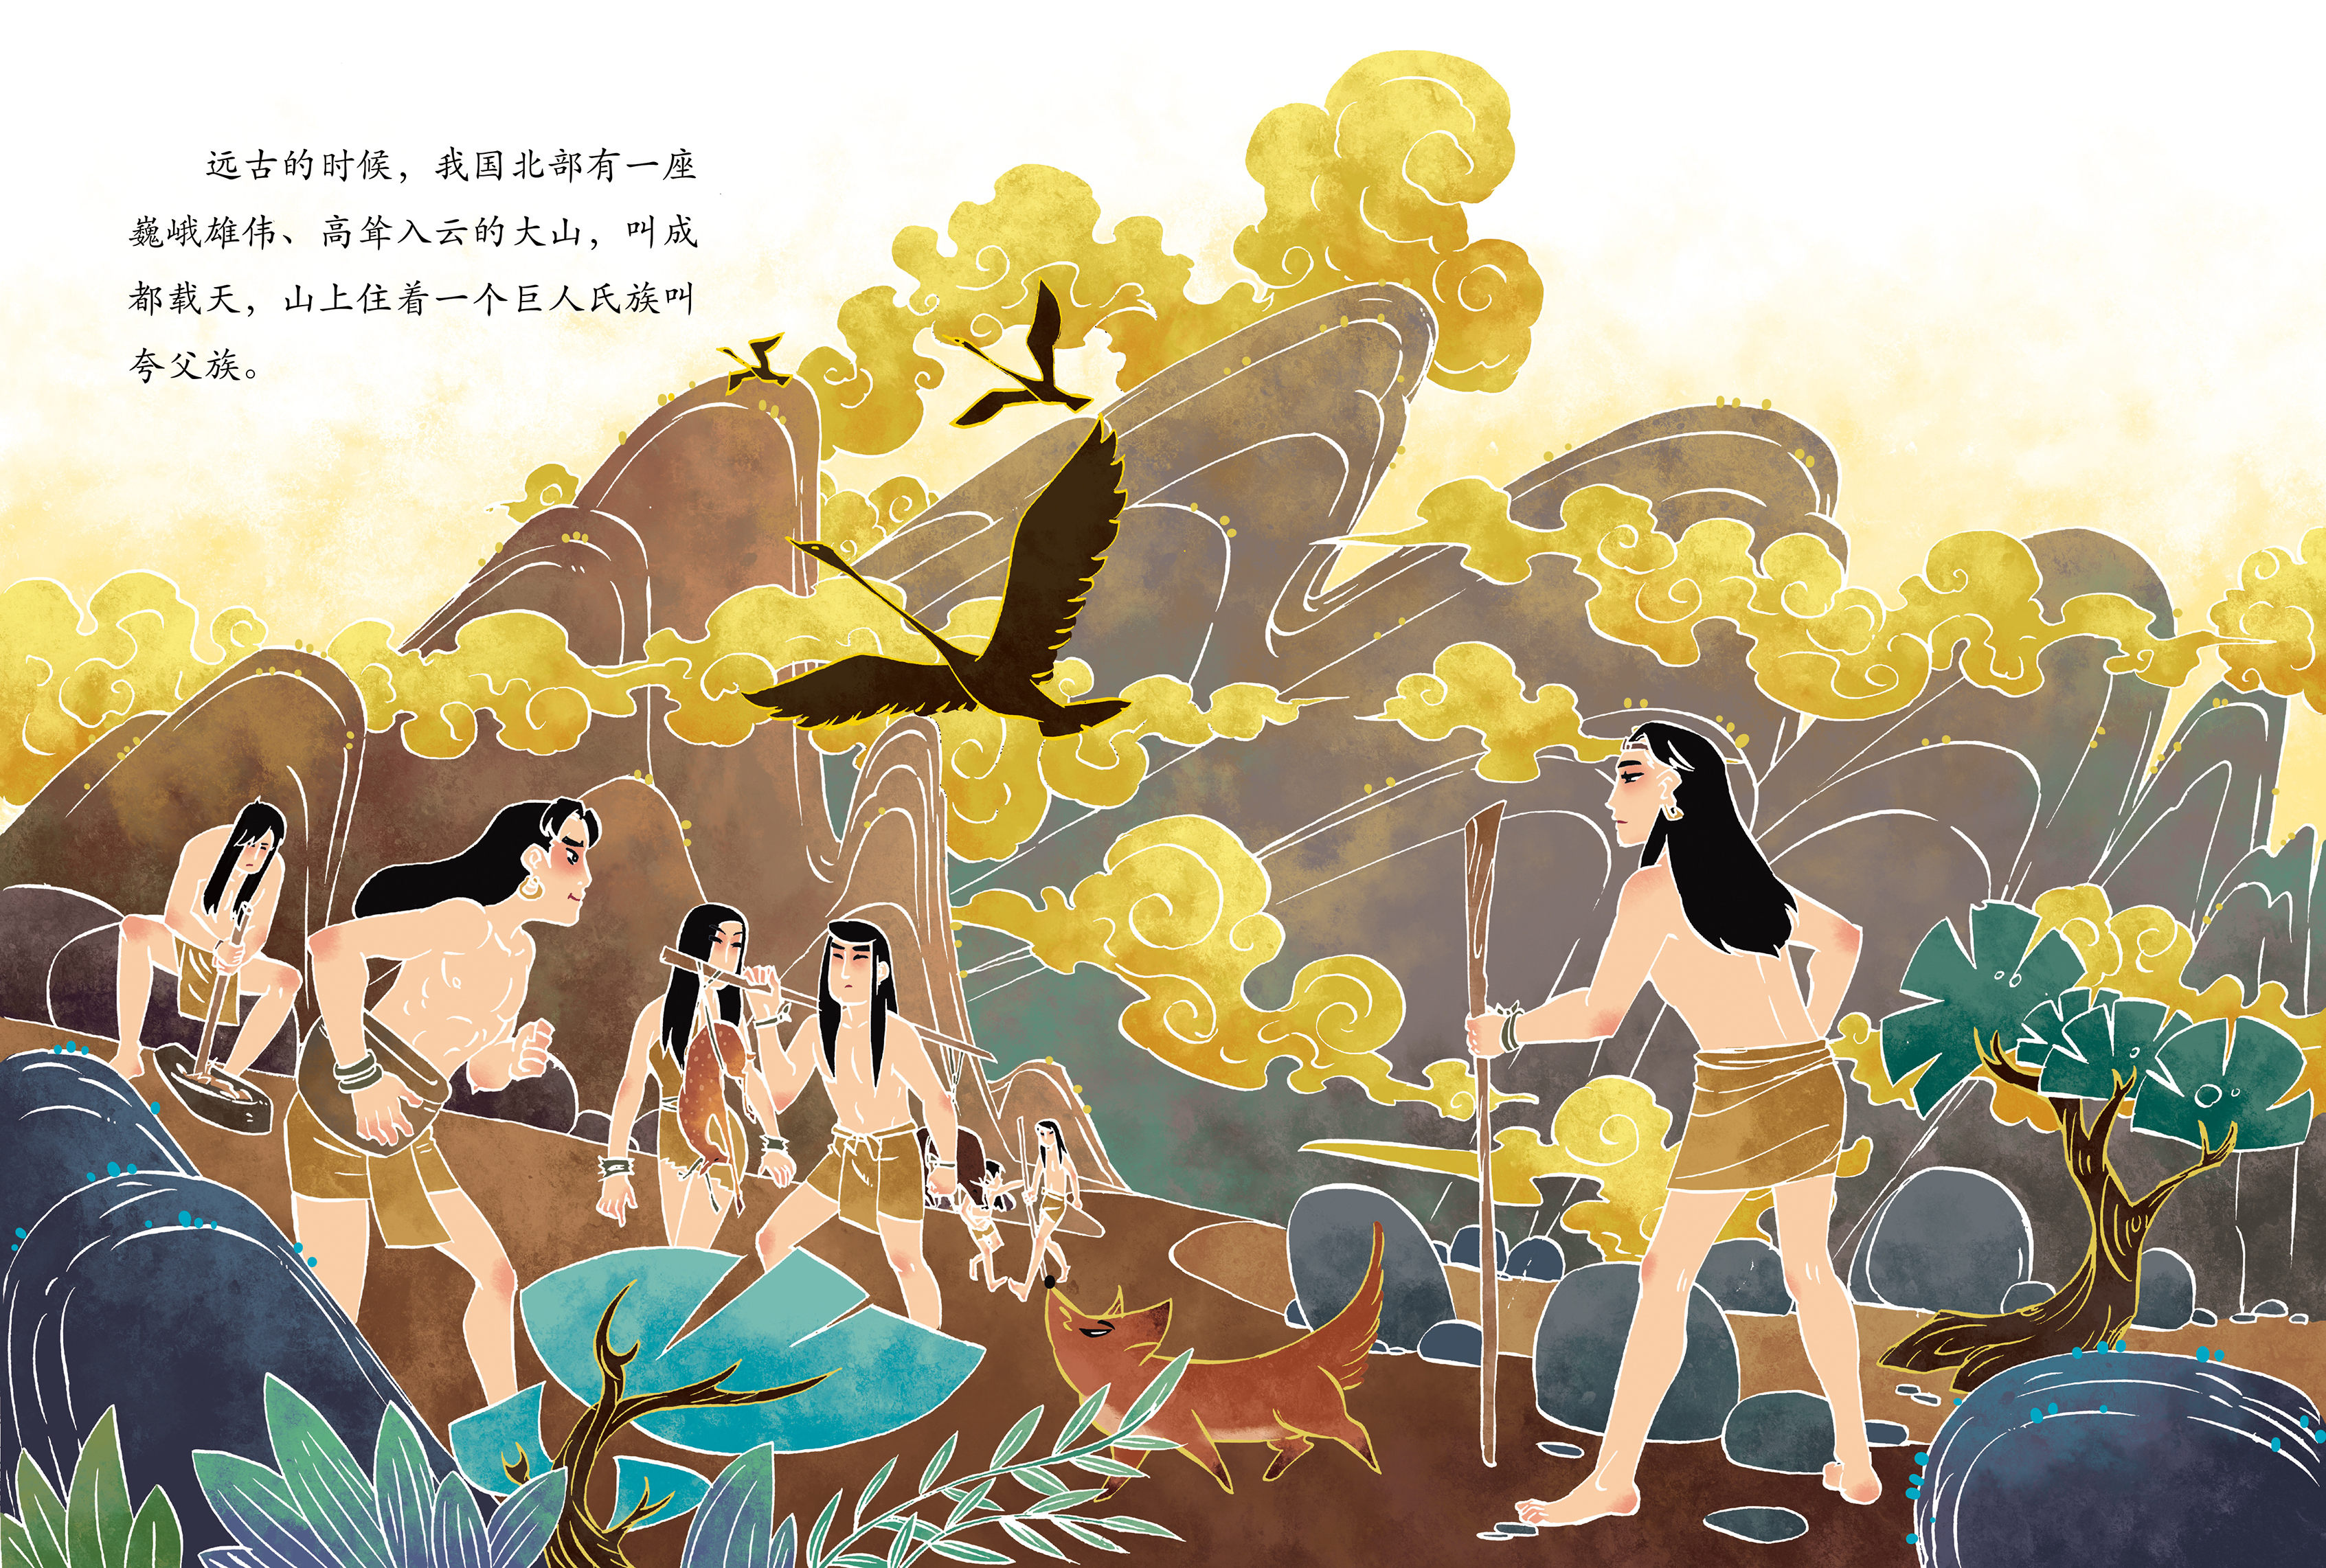 中国神话故事系列《夸父追日》